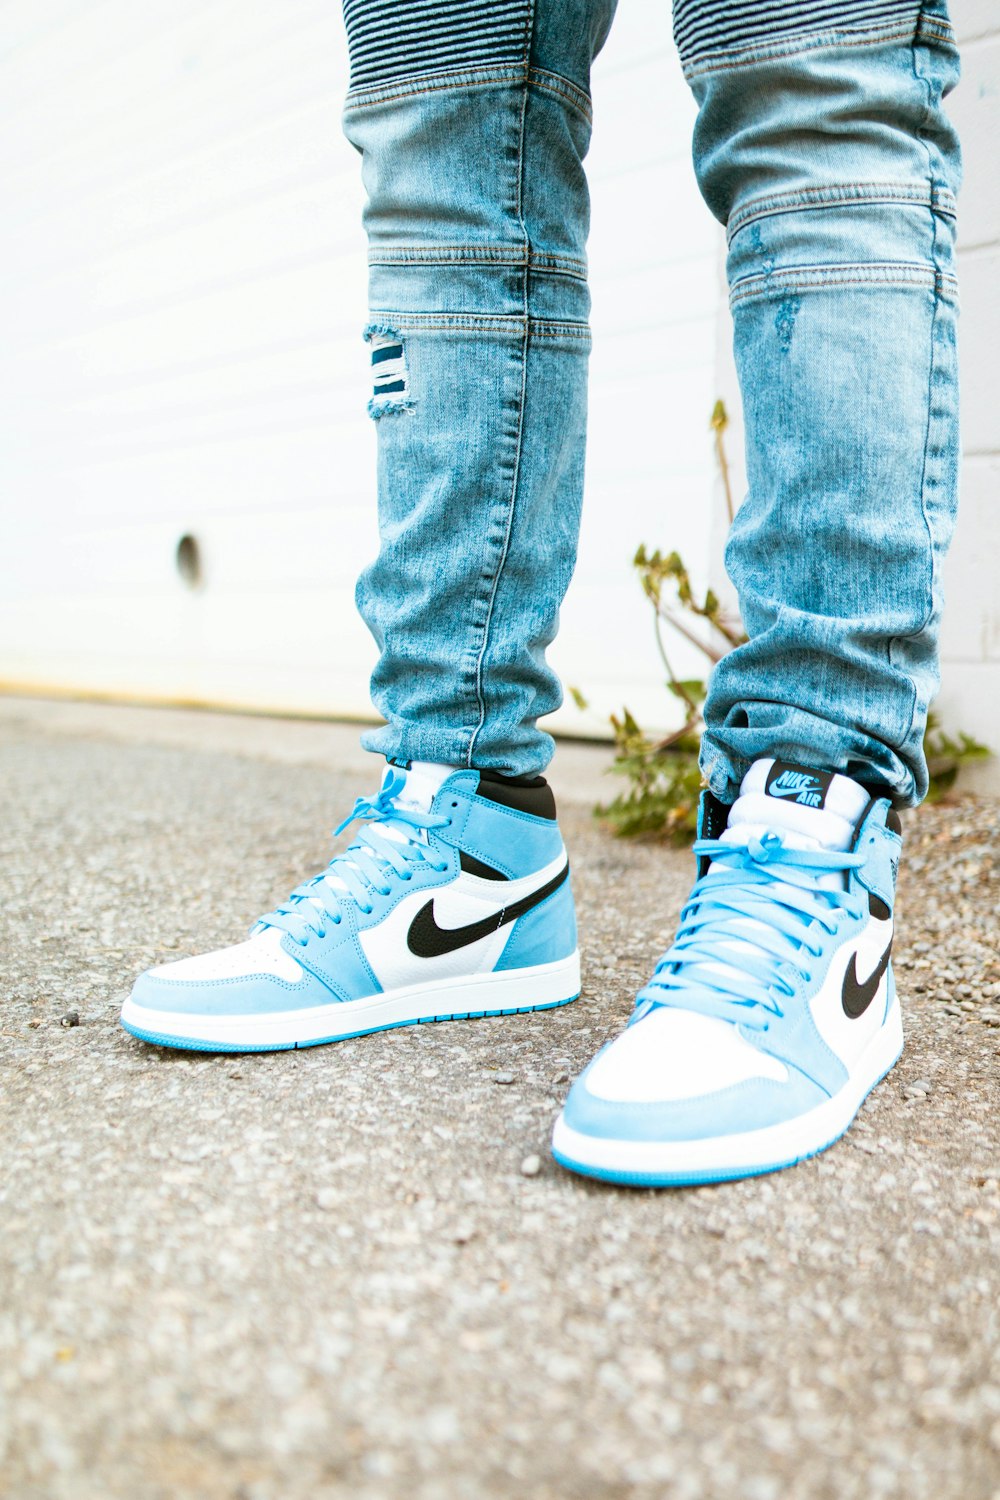 Landbrug modtagende Skriv en rapport Person in blue denim jeans and blue and white nike sneakers photo – Free  Shoe Image on Unsplash